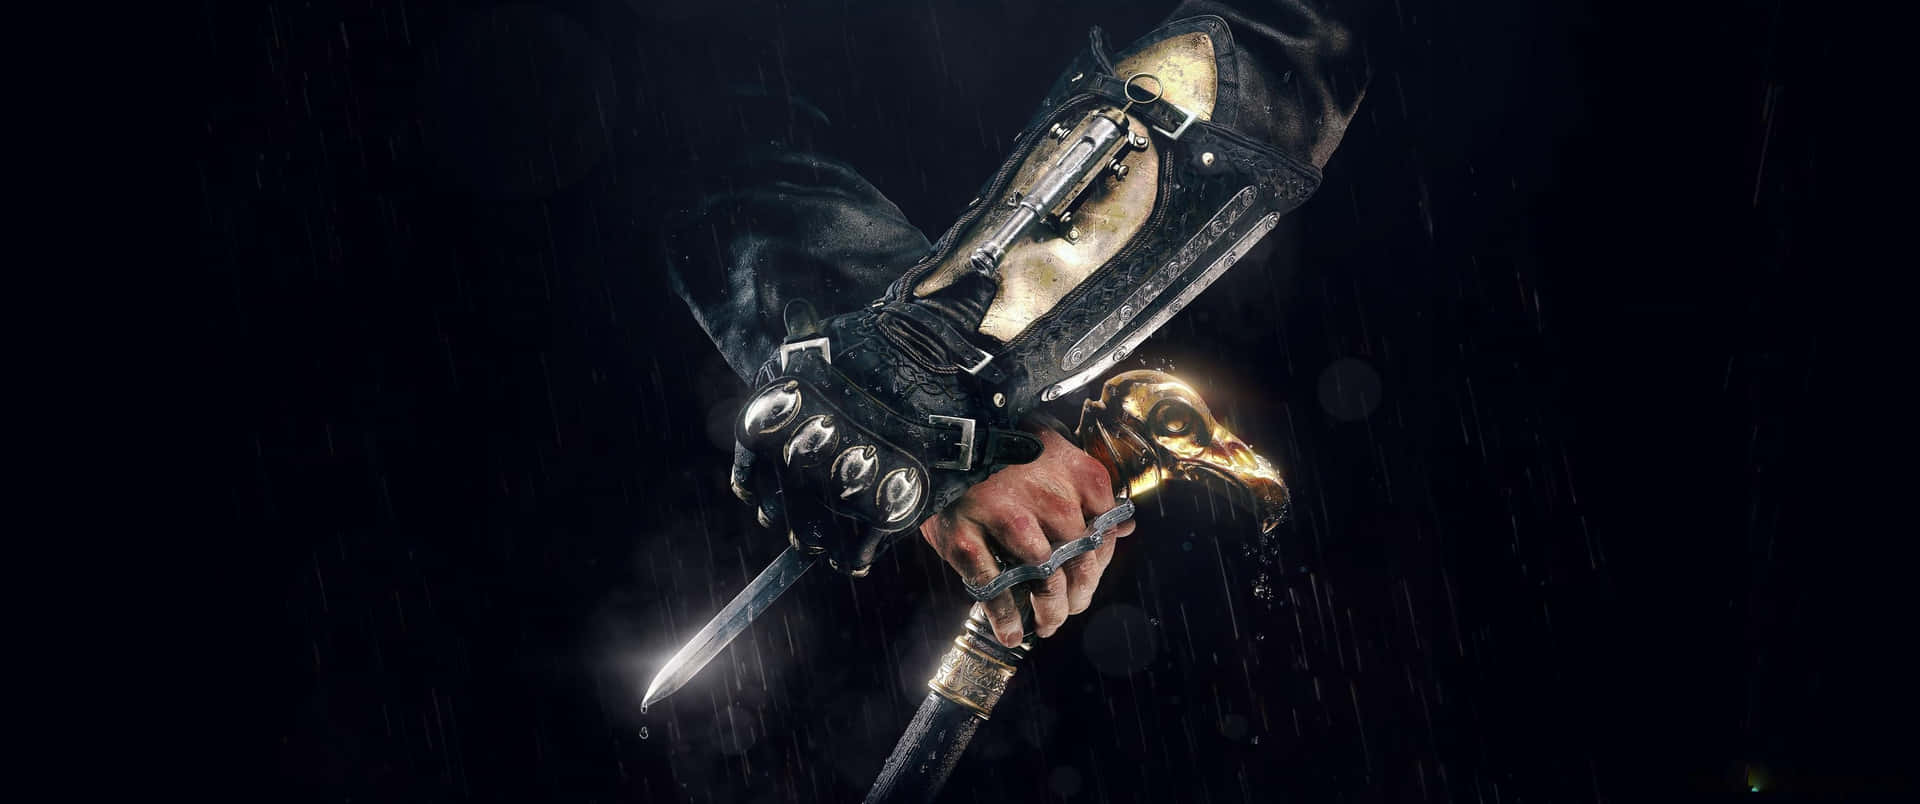 3440x1440phintergrundbild Von Assassin's Creed Odyssey Versteckte Klinge Und Einem Gehstock